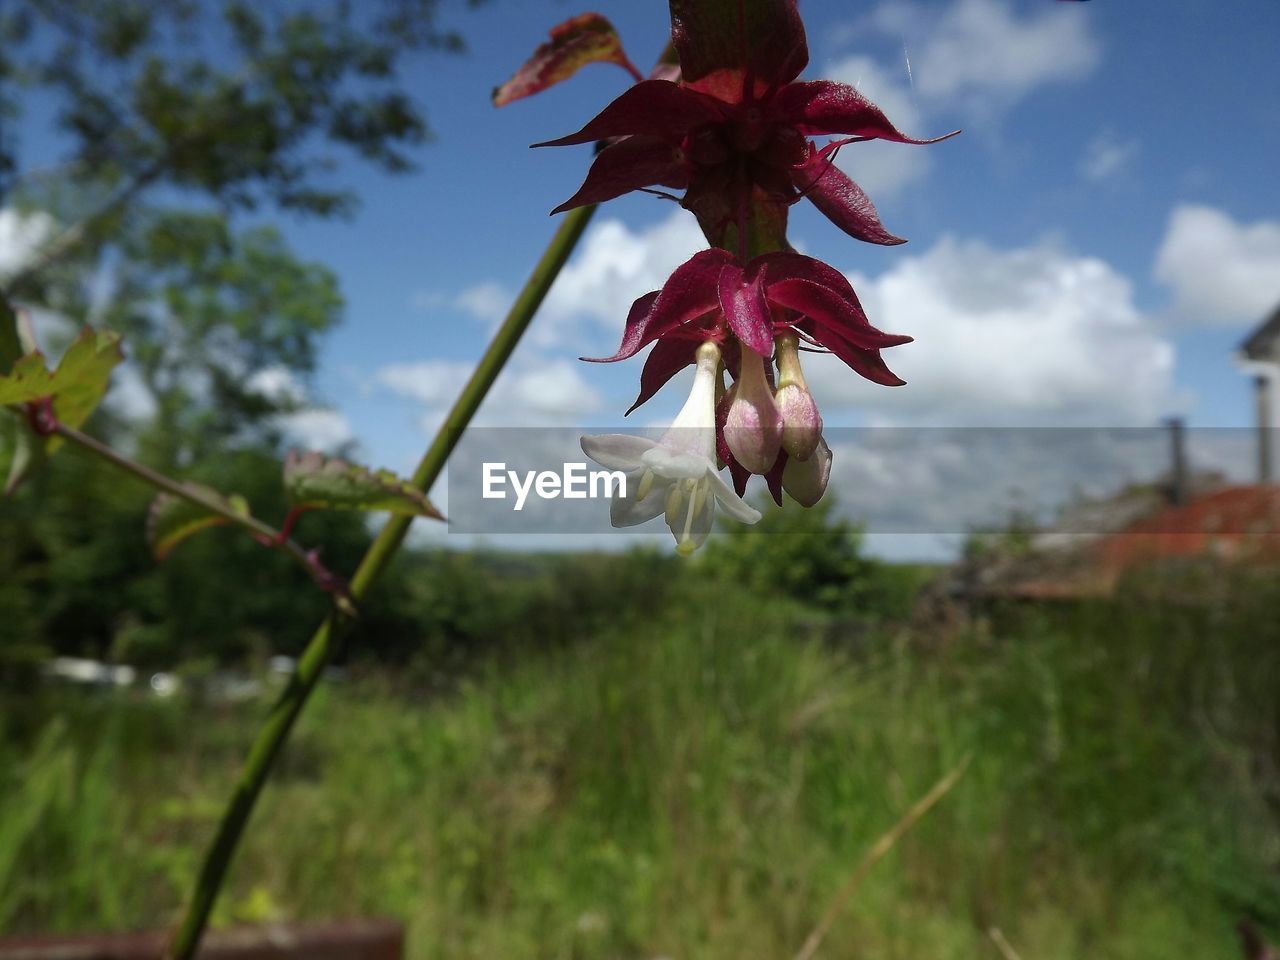 Close-up of flower against blurred landscape